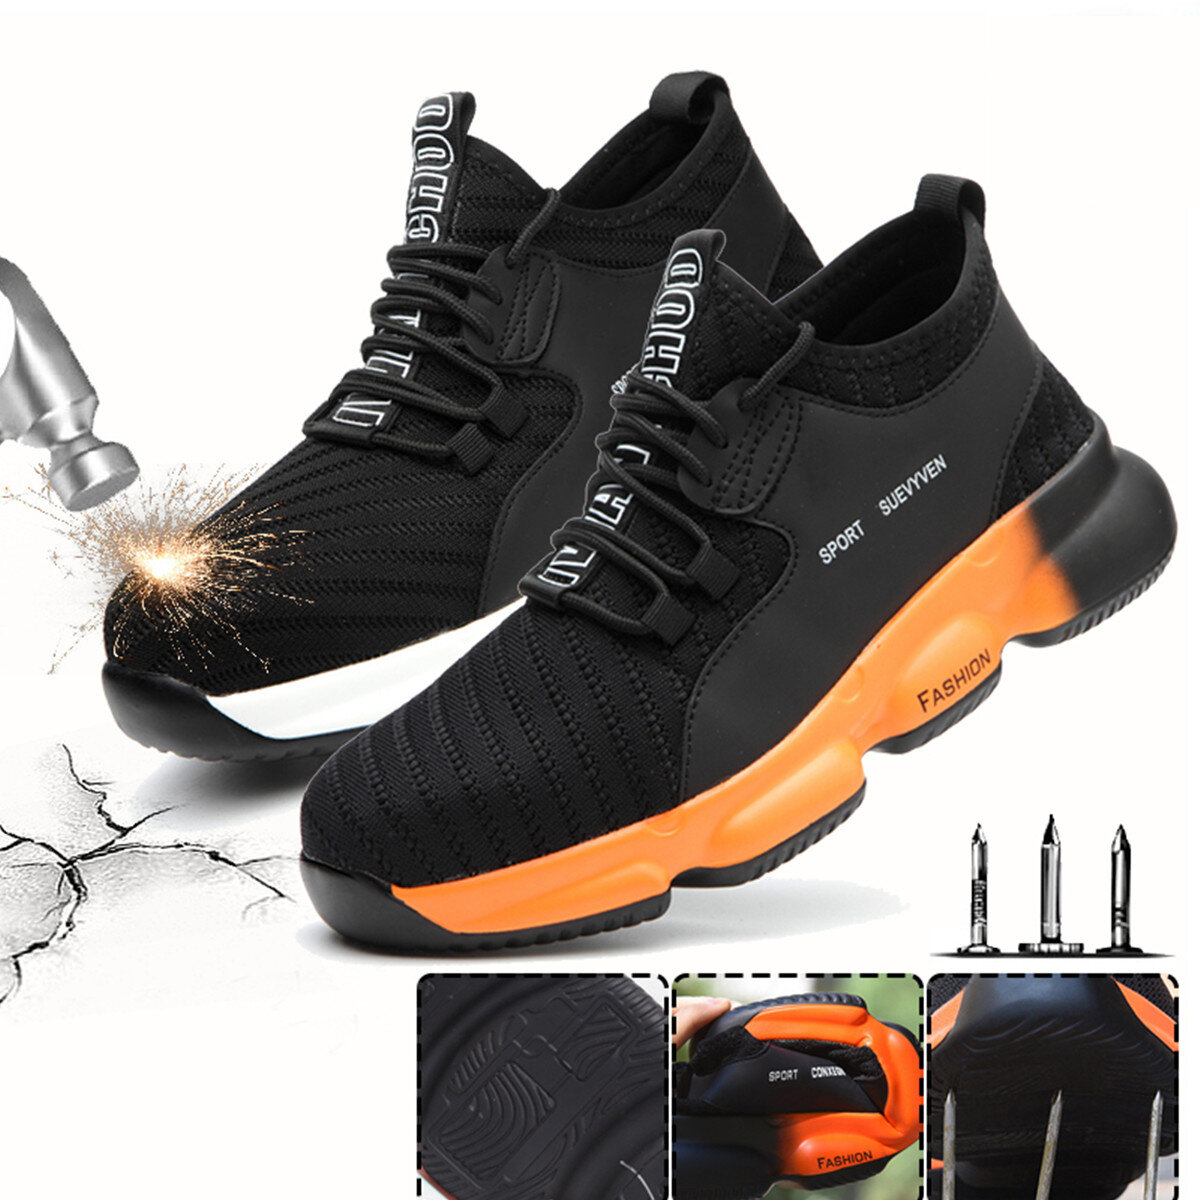 Chaussures de travail de sécurité unisexe volant tissage embout en acier chaussures de course Camping escalade marche Jogging baskets